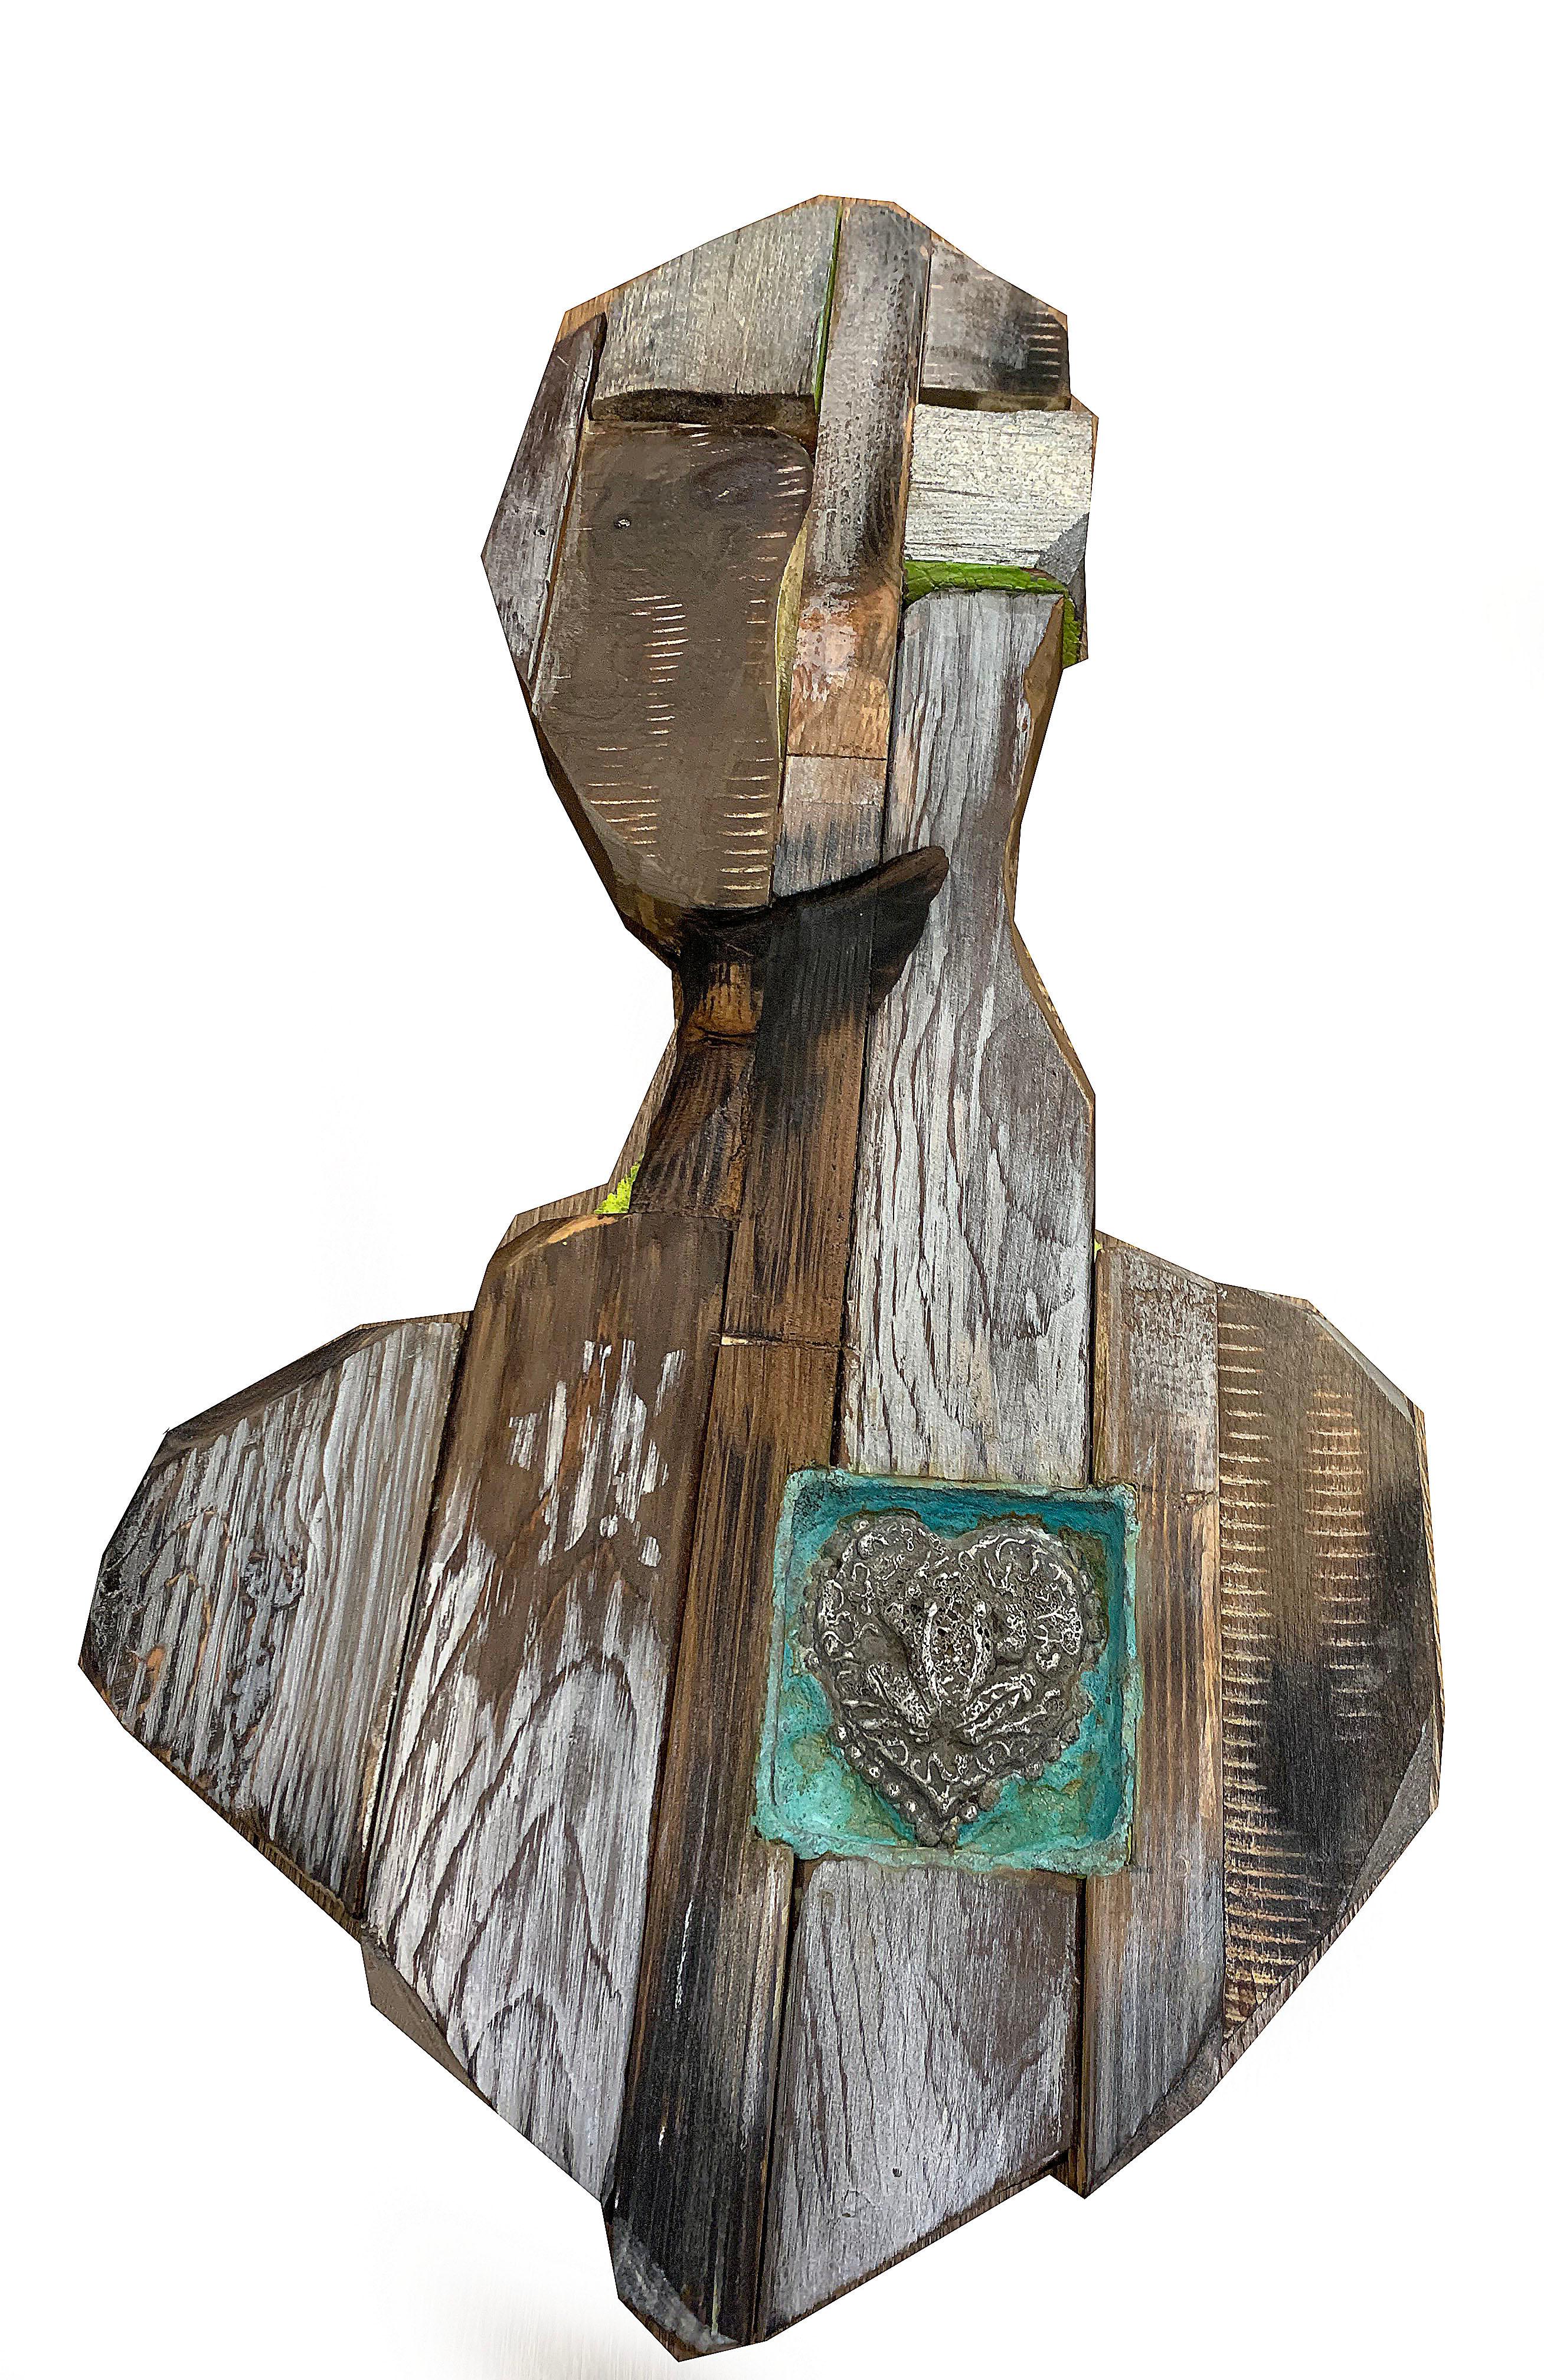 Chris Reilly Figurative Sculpture – Frog Heart II